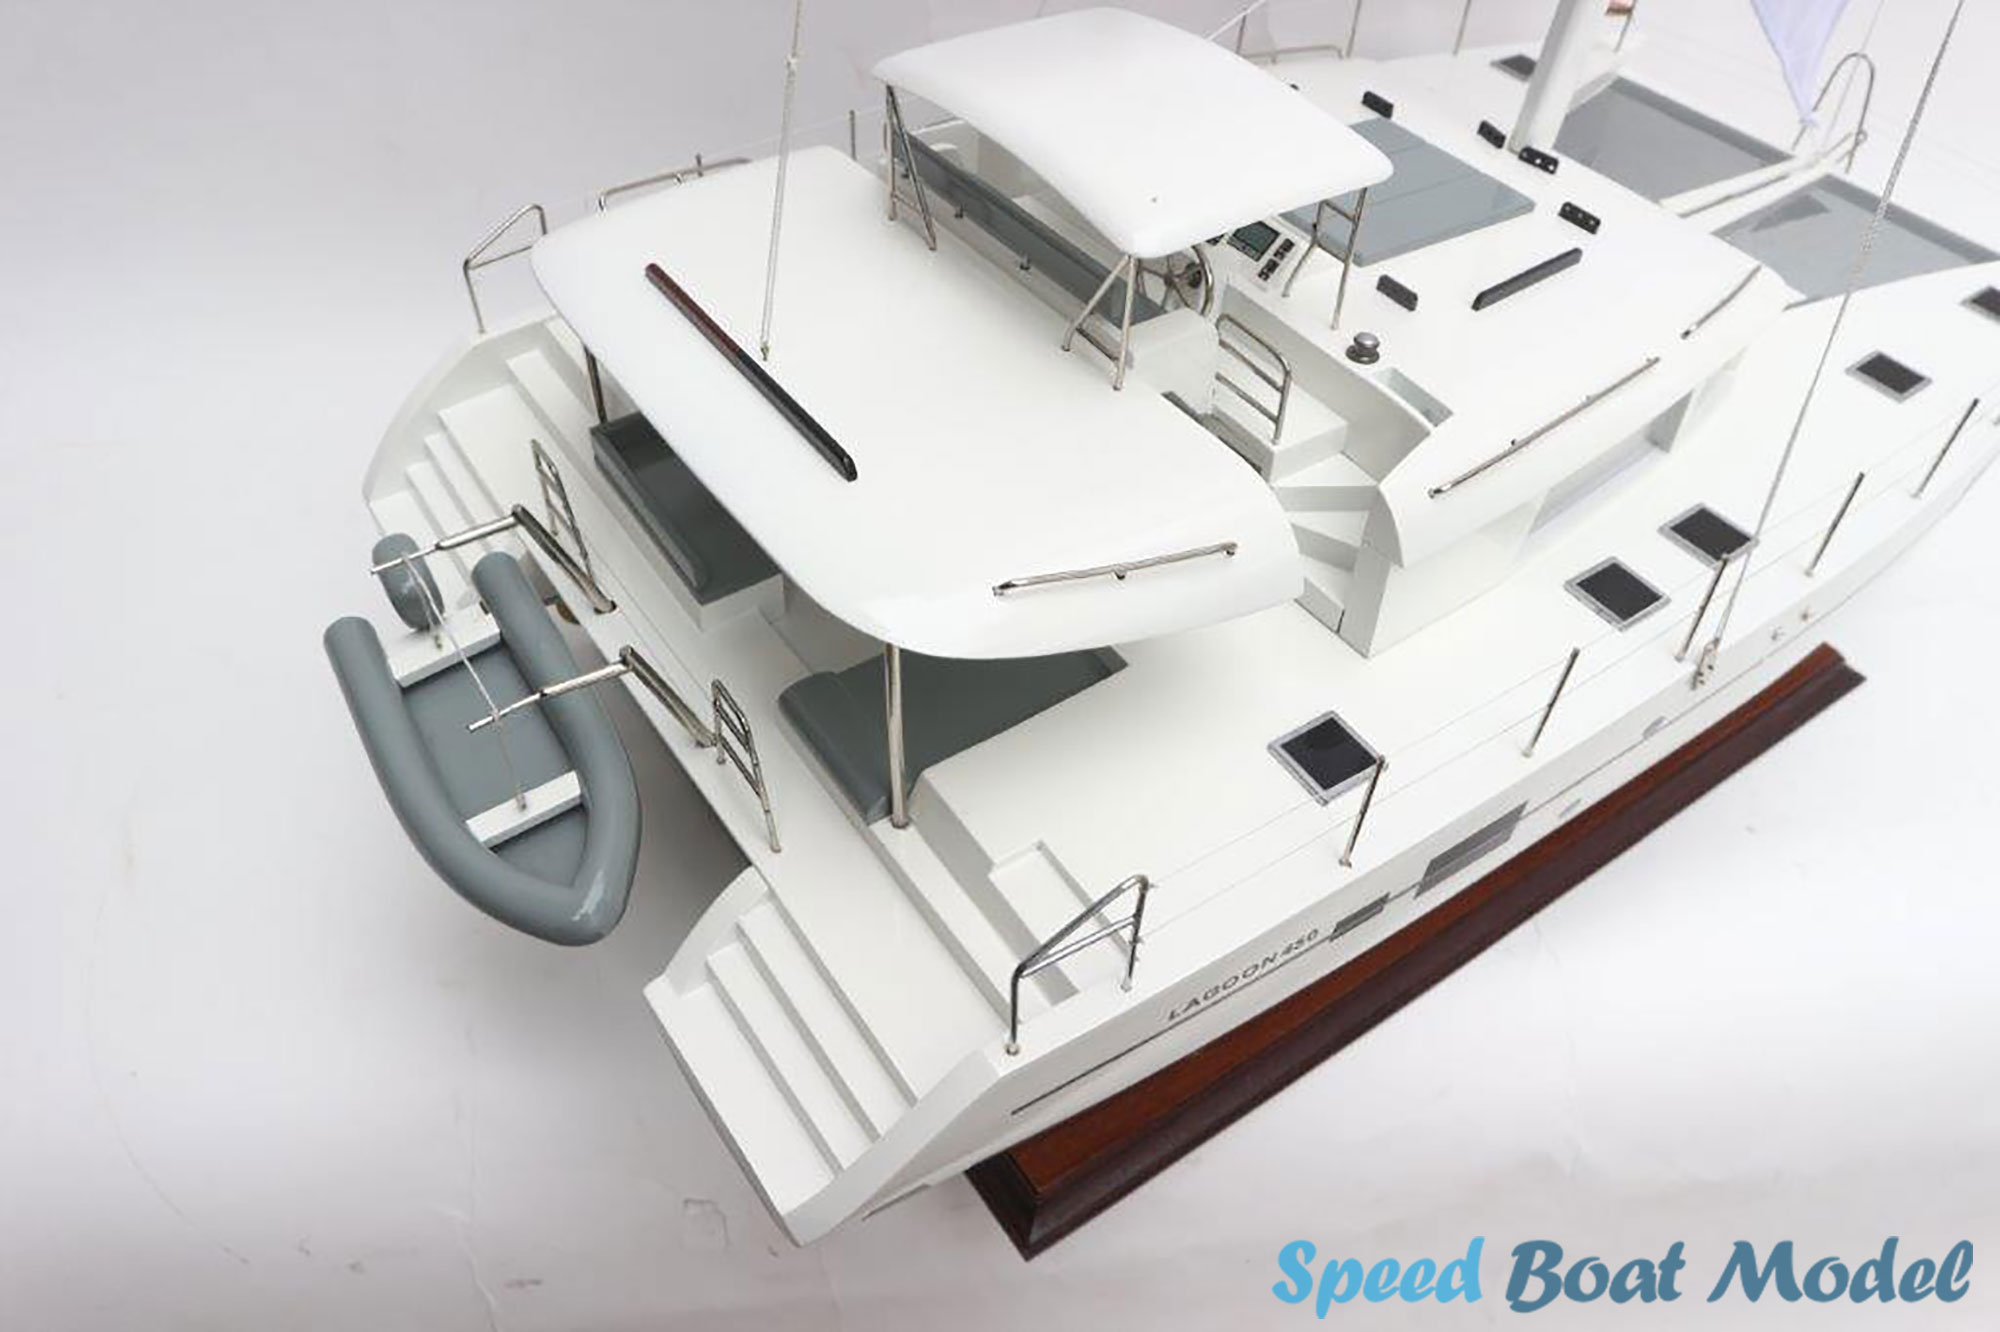 Lagoon 450f Catamaran Modern Yacht Model 27.5